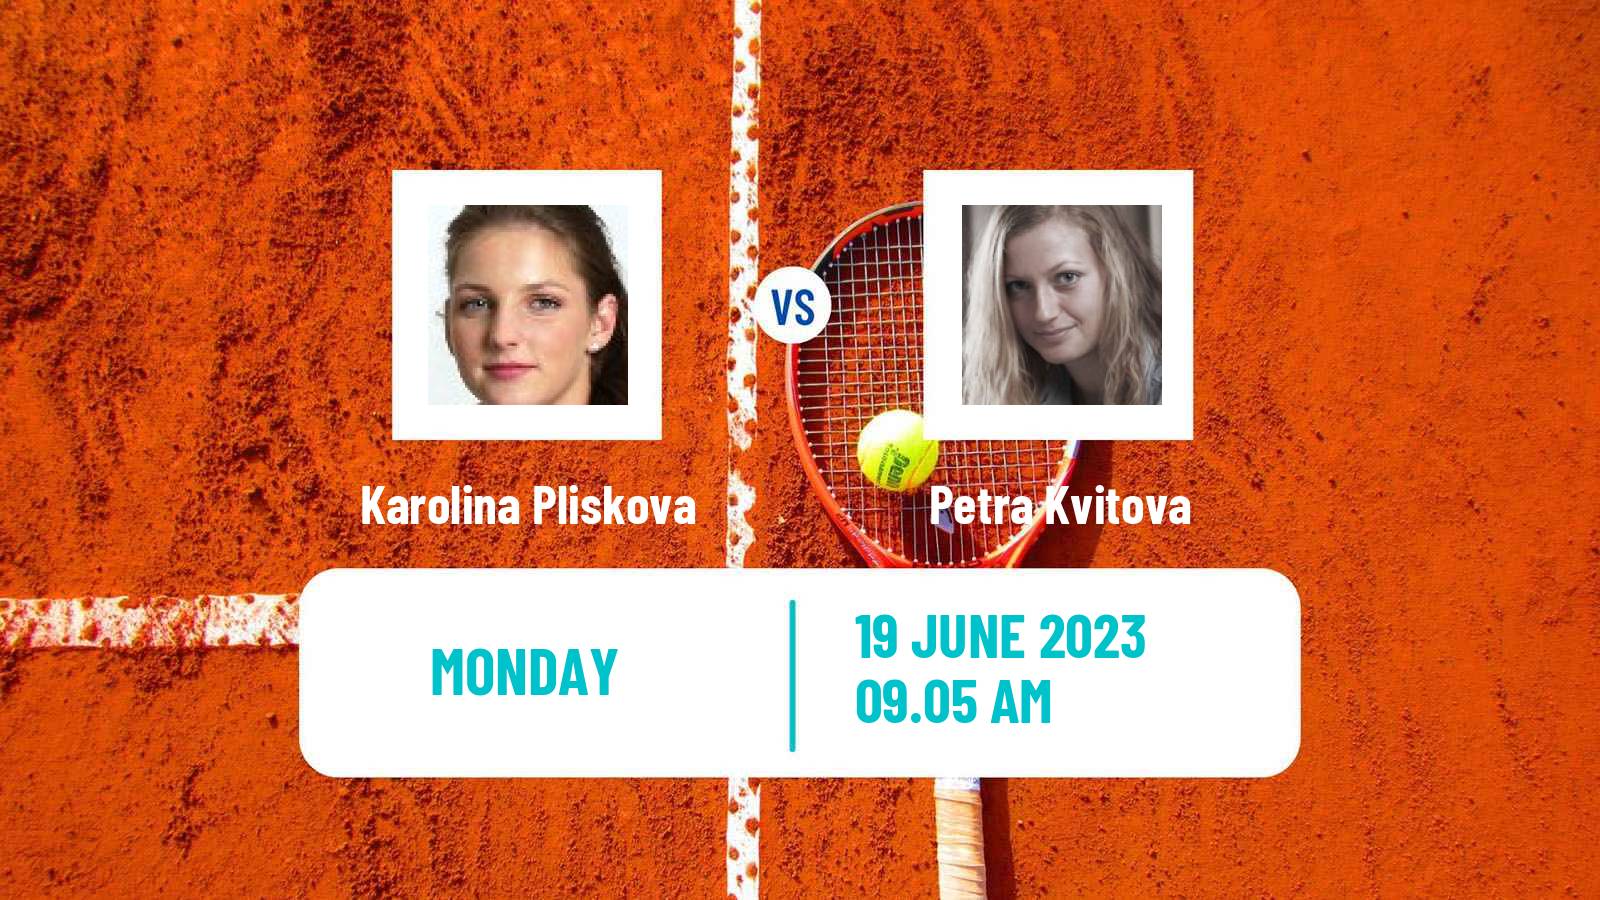 Tennis WTA Berlin Karolina Pliskova - Petra Kvitova